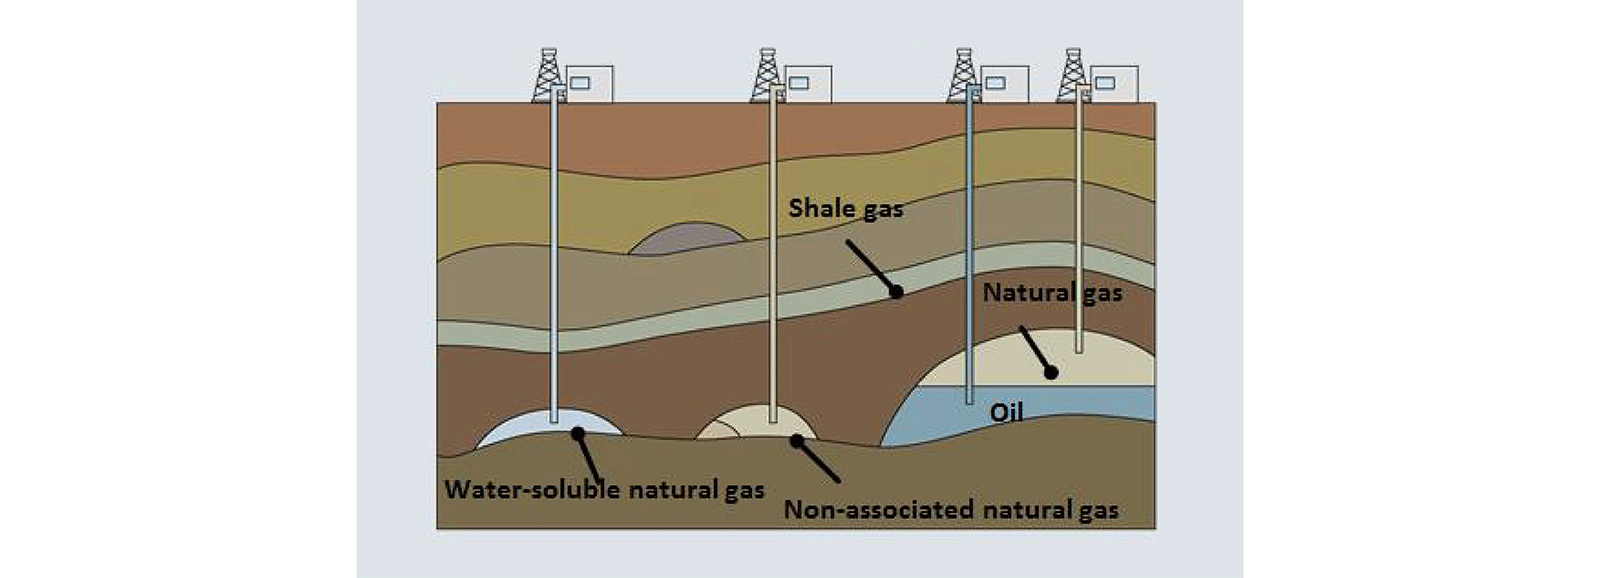 استخراج الغاز الطبيعي التقليدي